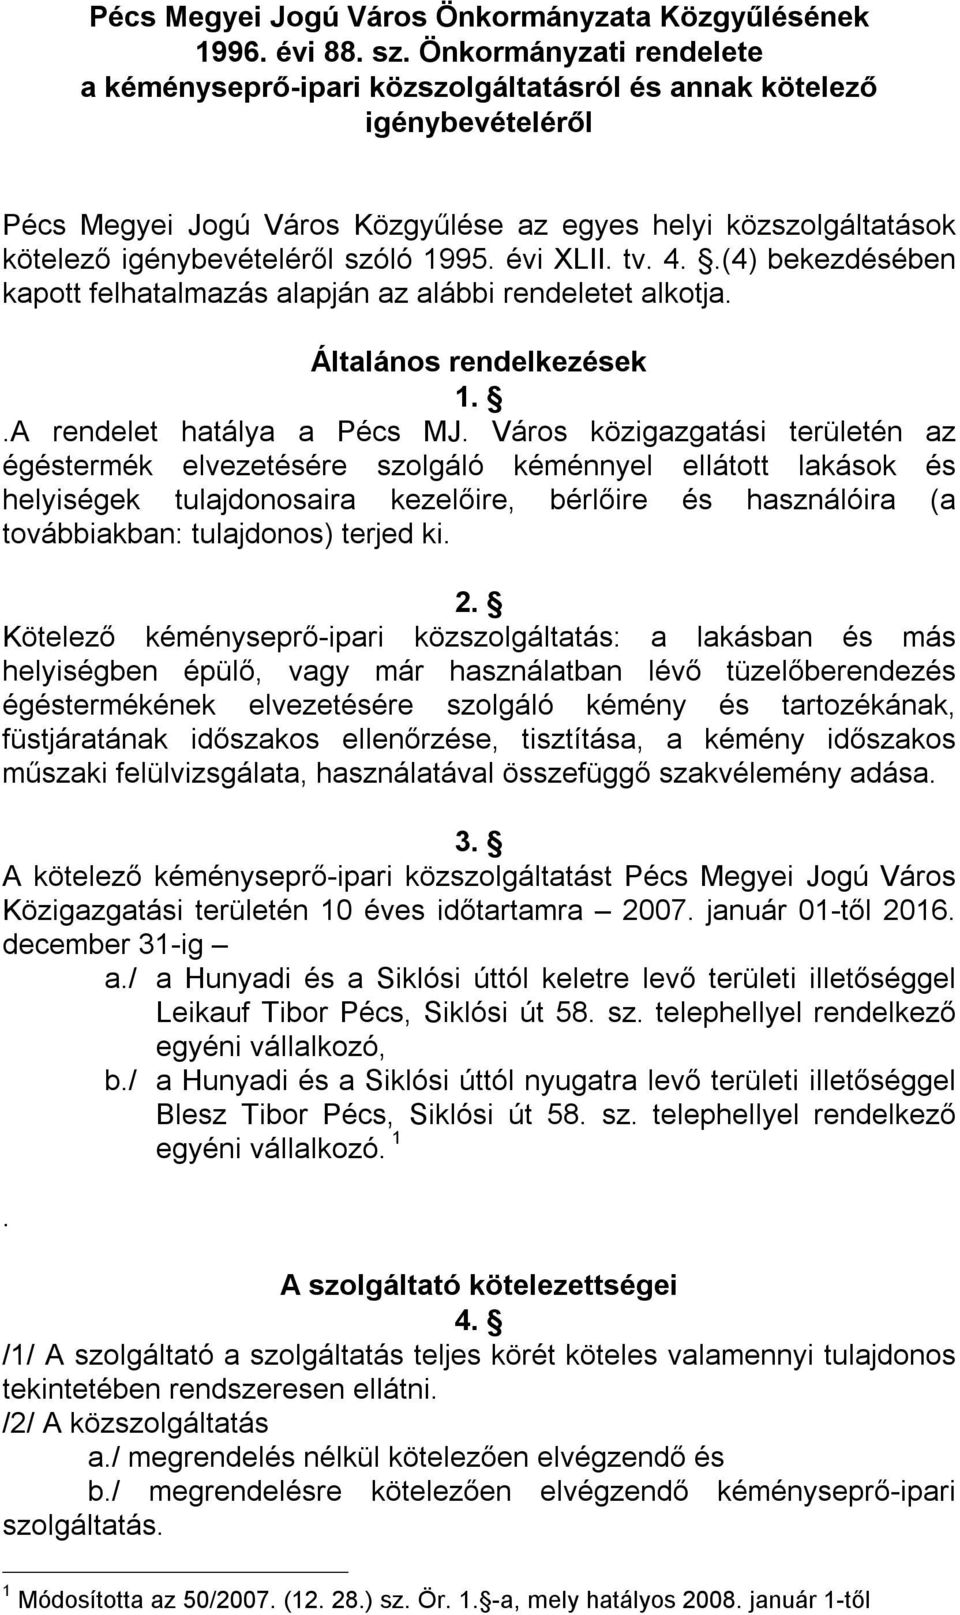 1995. évi XLII. tv. 4..(4) bekezdésében kapott felhatalmazás alapján az alábbi rendeletet alkotja. Általános rendelkezések 1..A rendelet hatálya a Pécs MJ.